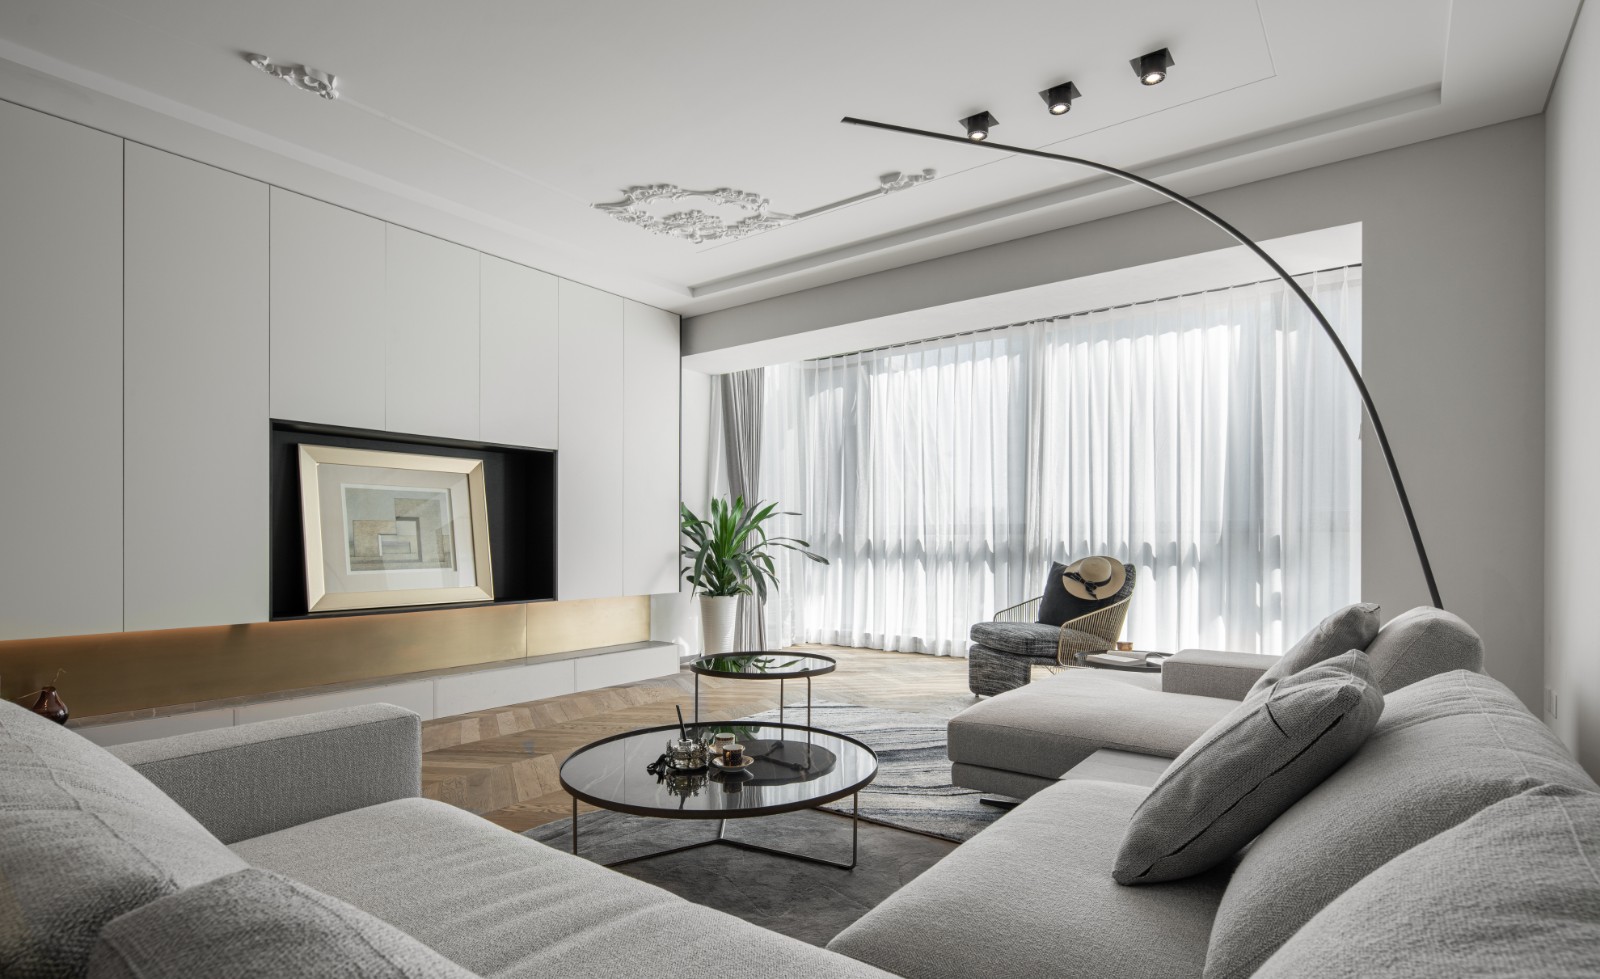 客厅的设计,设计师通过木质地板,布艺沙发,以及灯光的运用,呈现出现代